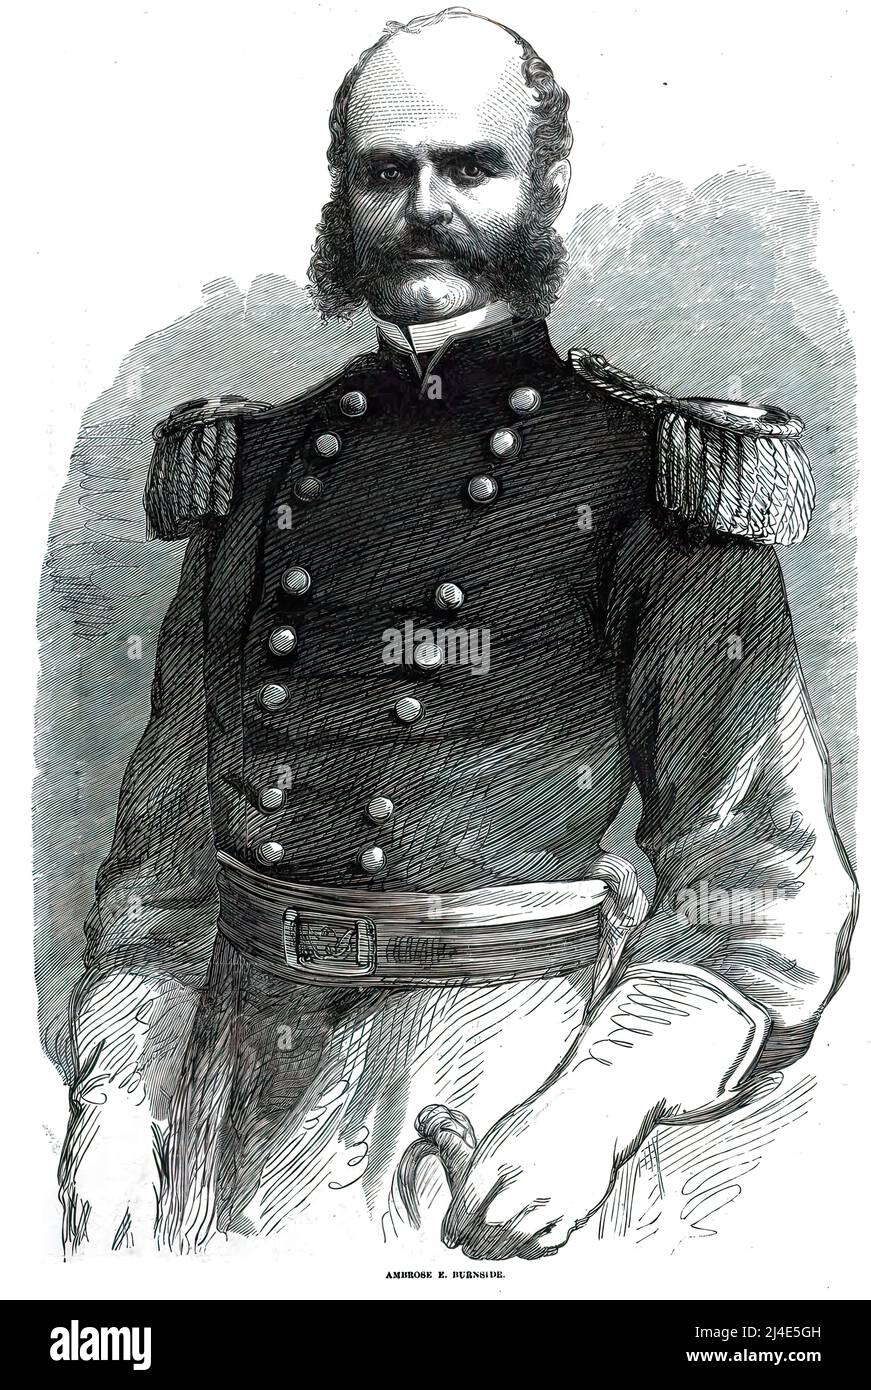 Ambrose Everett Burnside, generale dell'esercito dell'Unione nella guerra civile americana e governatore e senatore di Rhode Island. illustrazione del 19th secolo. Foto Stock